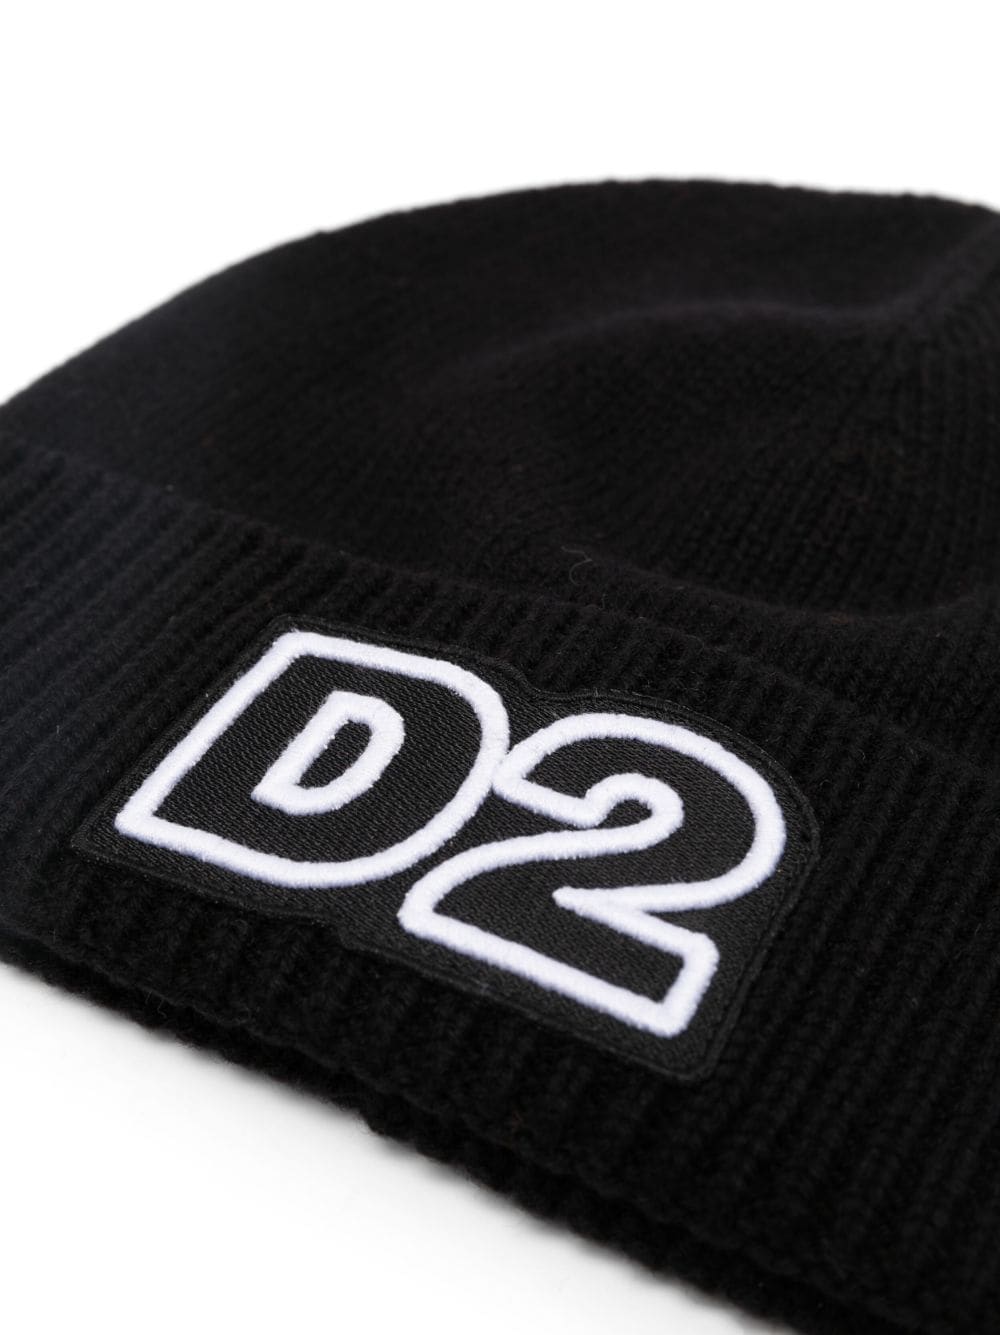 Dsquared2 Kids cappello con logo